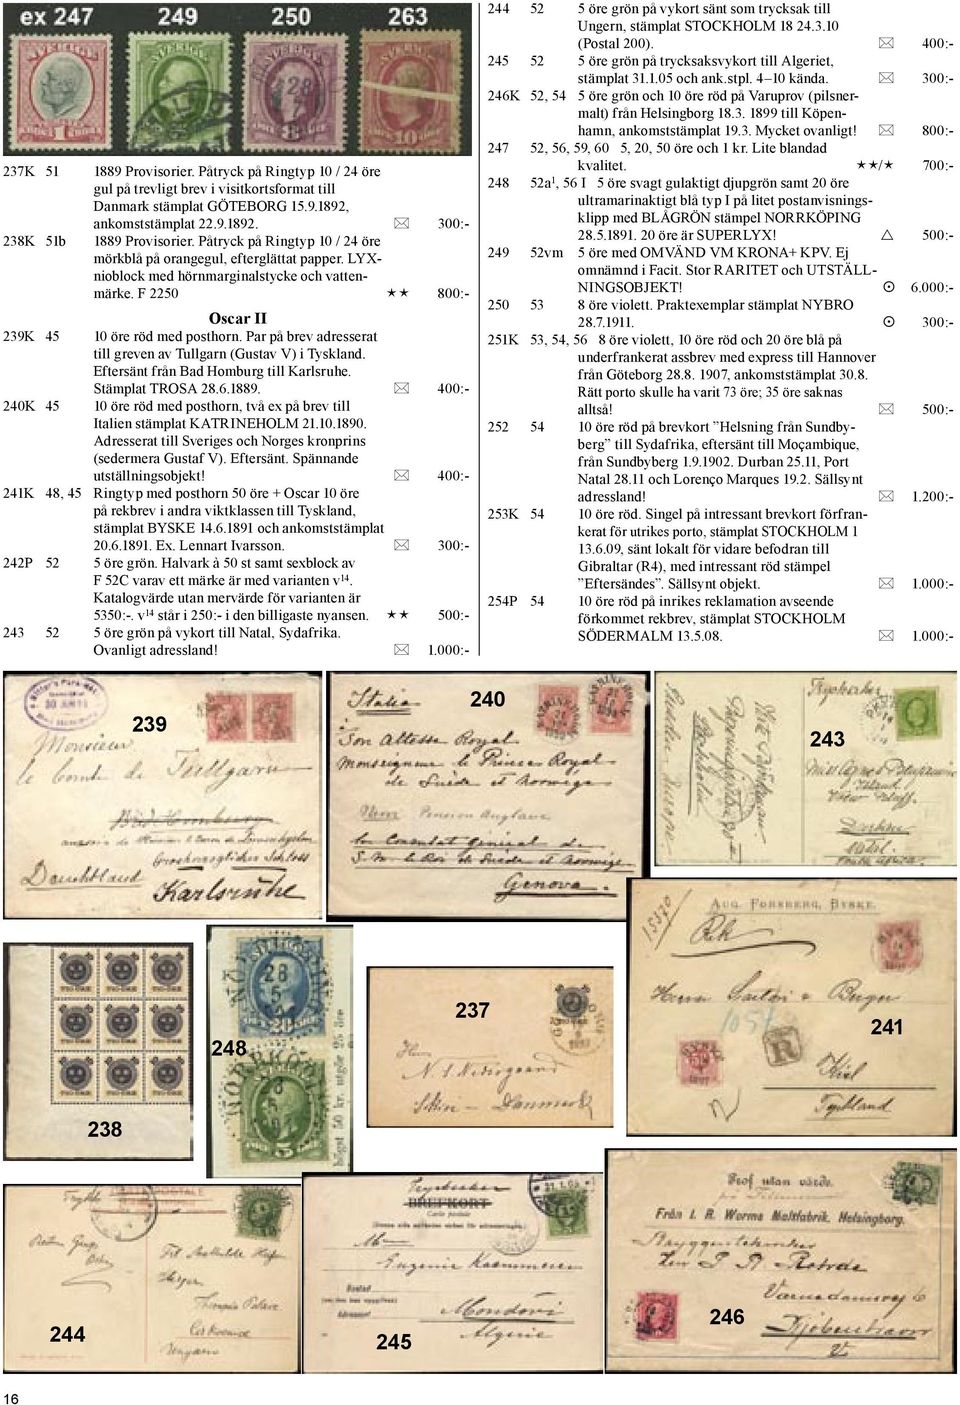 Par på brev adresserat till greven av Tullgarn (Gustav V) i Tyskland. Eftersänt från Bad Homburg till Karlsruhe. Stämplat TROSA 28.6.1889.